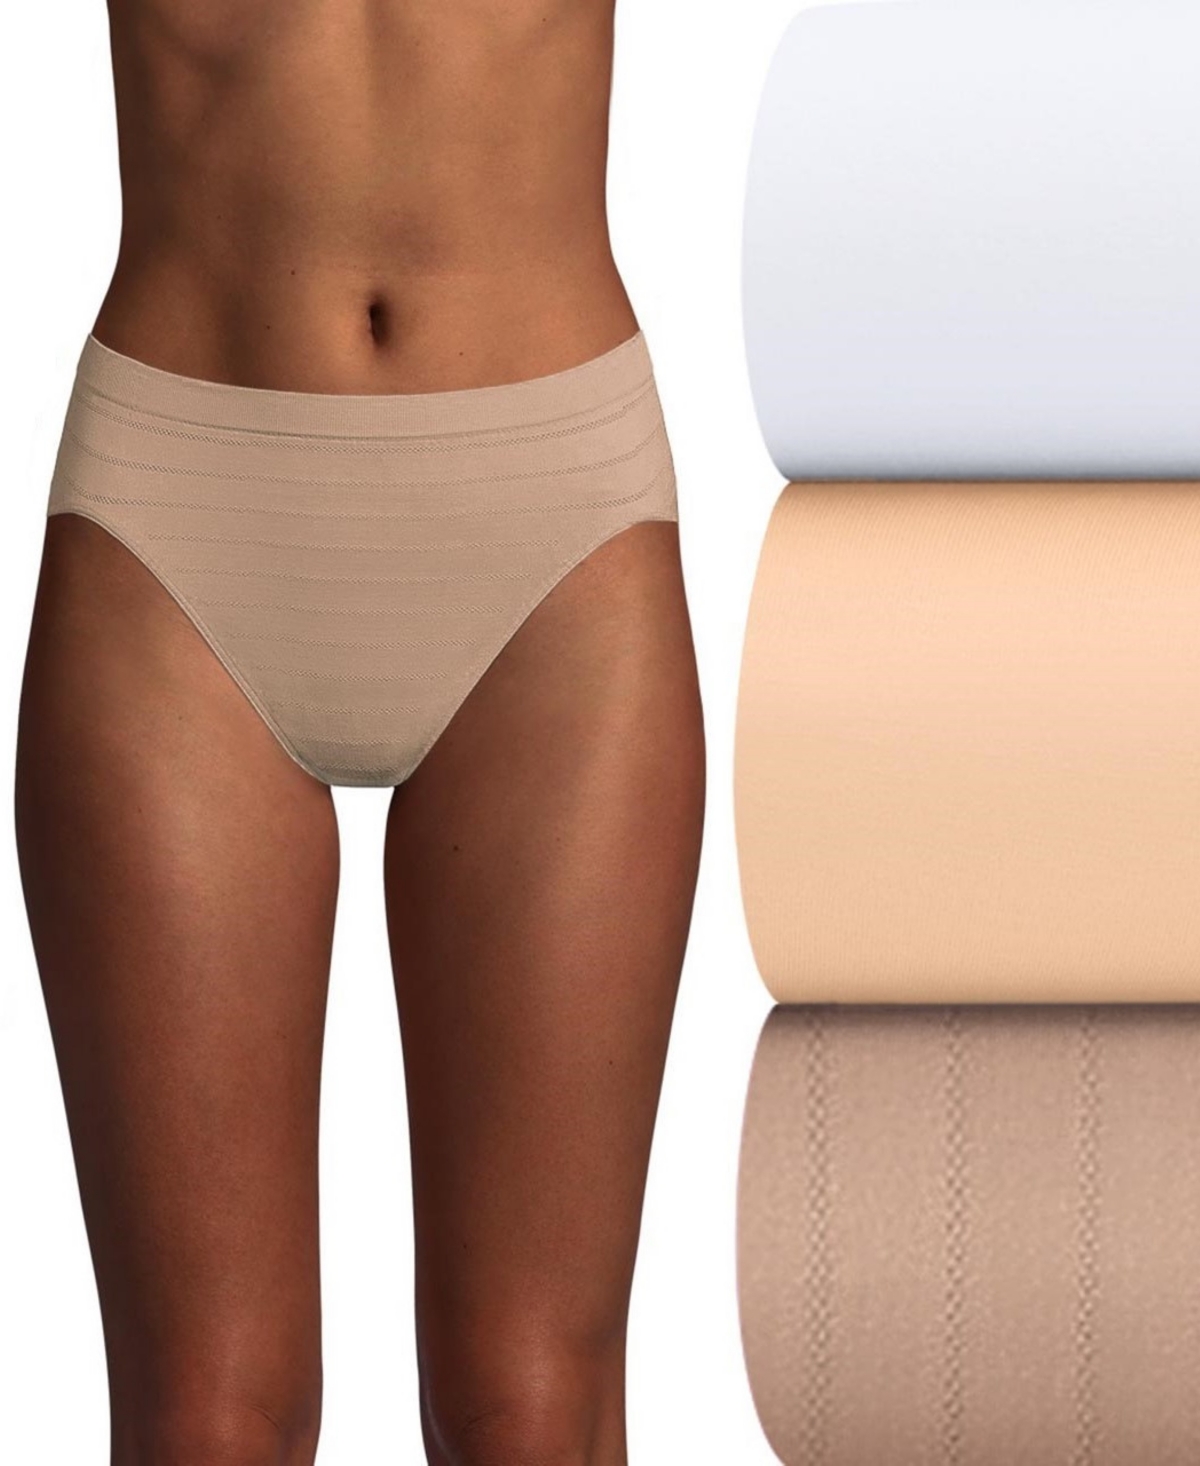 Women's 3-Pk. Cool Comfort Microfiber Brief Underwear AK83 - White/Sand/Blush